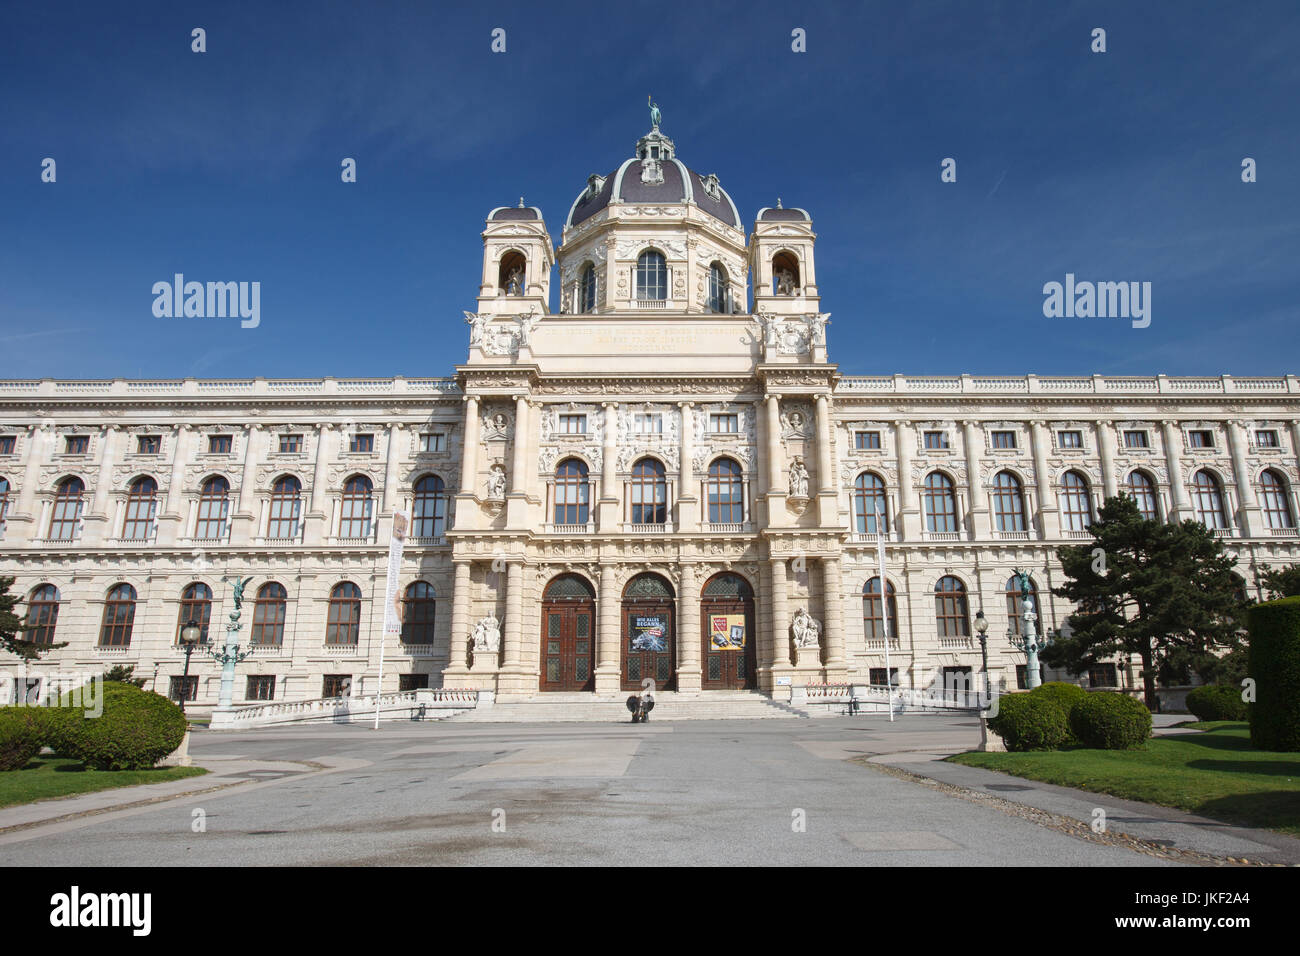 Vue panoramique du célèbre palace Art History Museum (Naturhistorisches Museum de Vienne). L'Autriche Banque D'Images